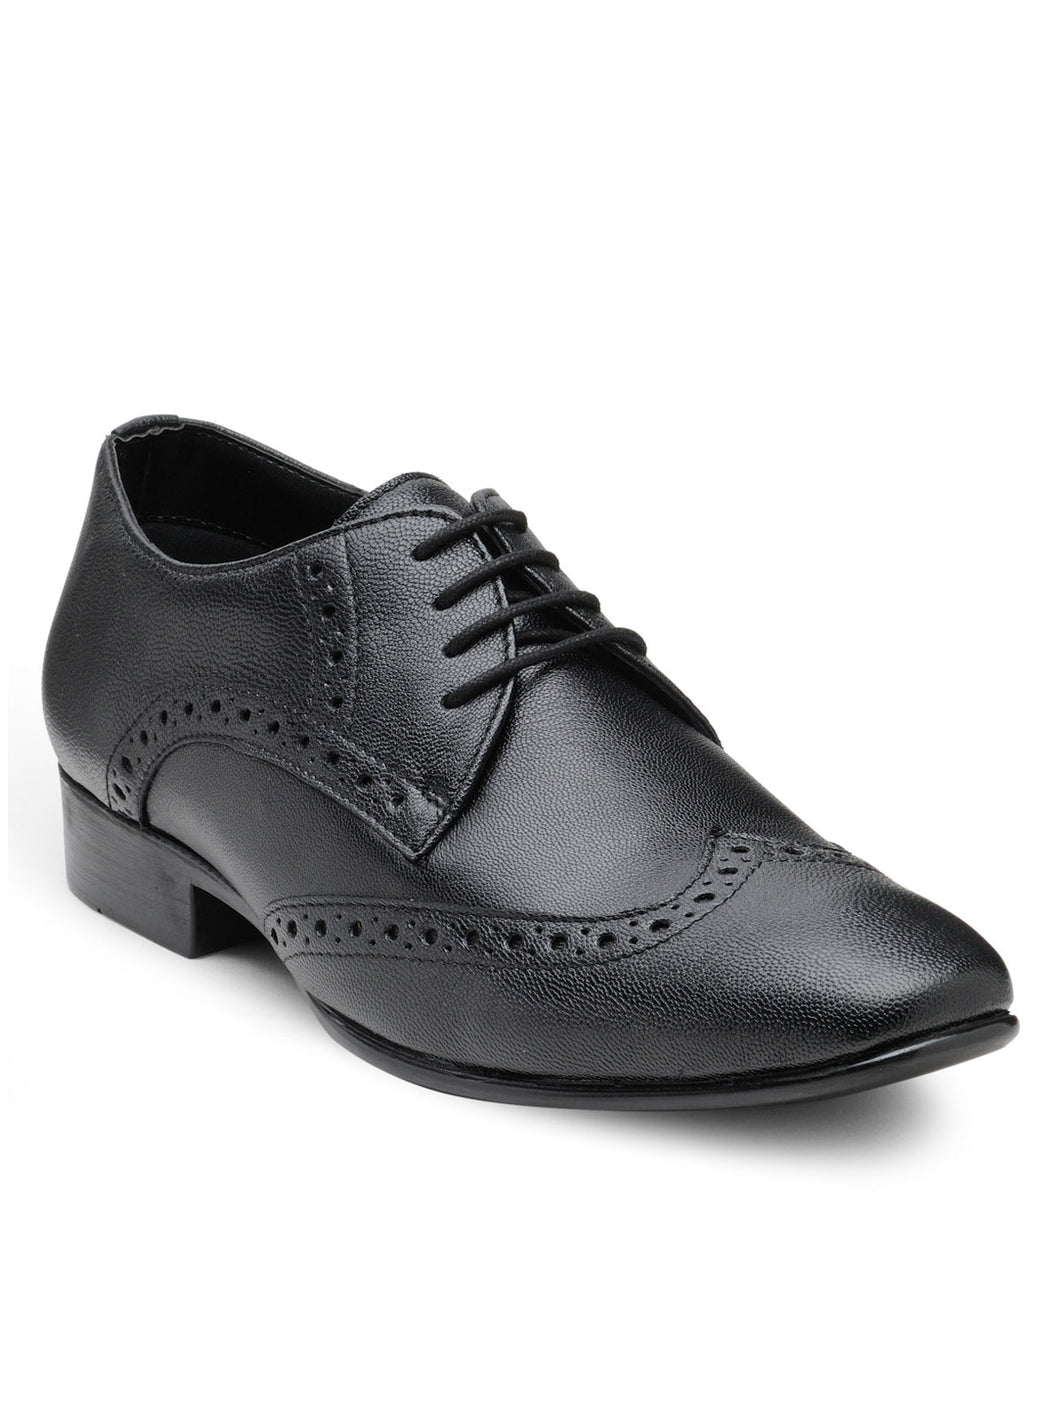 Teakwood Leather Men's Black Derby Shoes